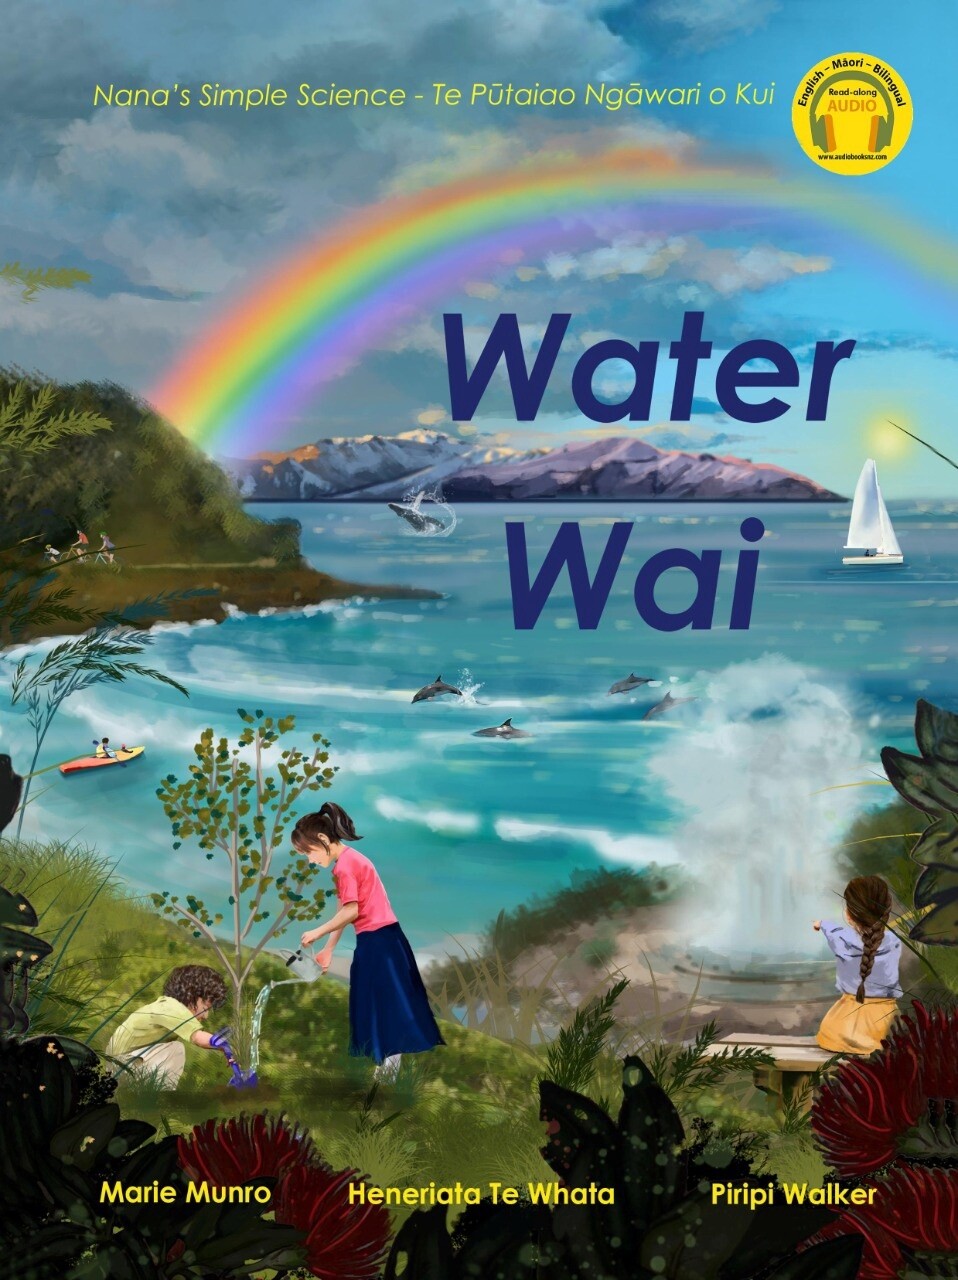 Nana's Simple Science: Water Wai by Heneriata Te Whata and Piripi Walker